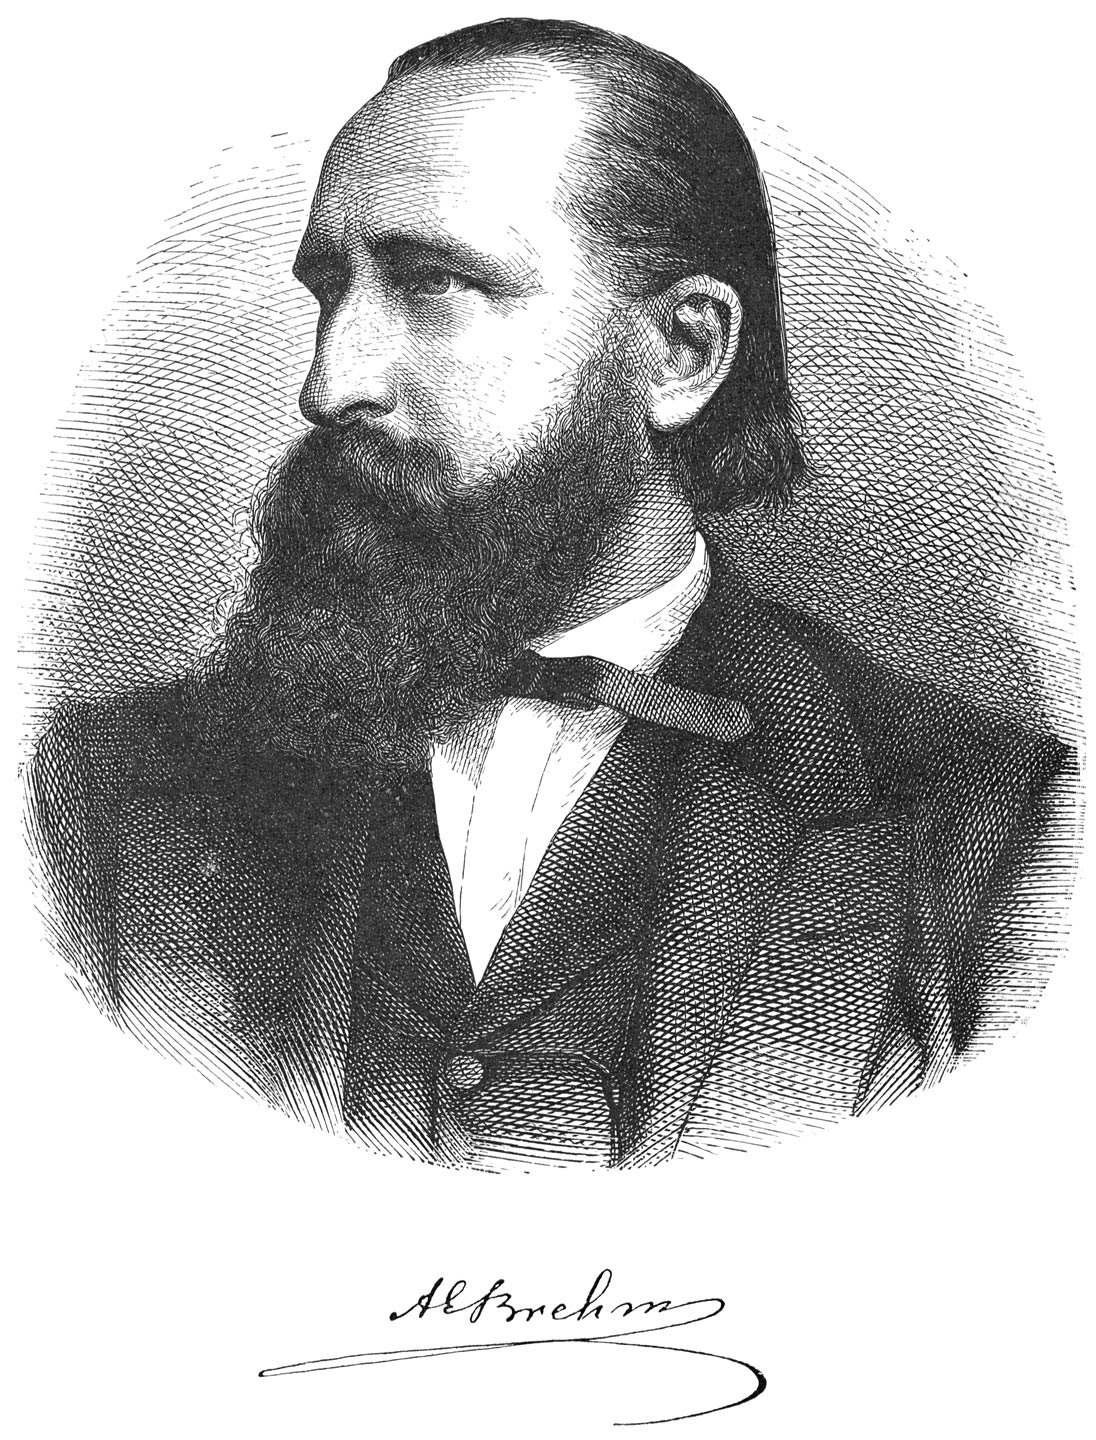 A. E. Brehm